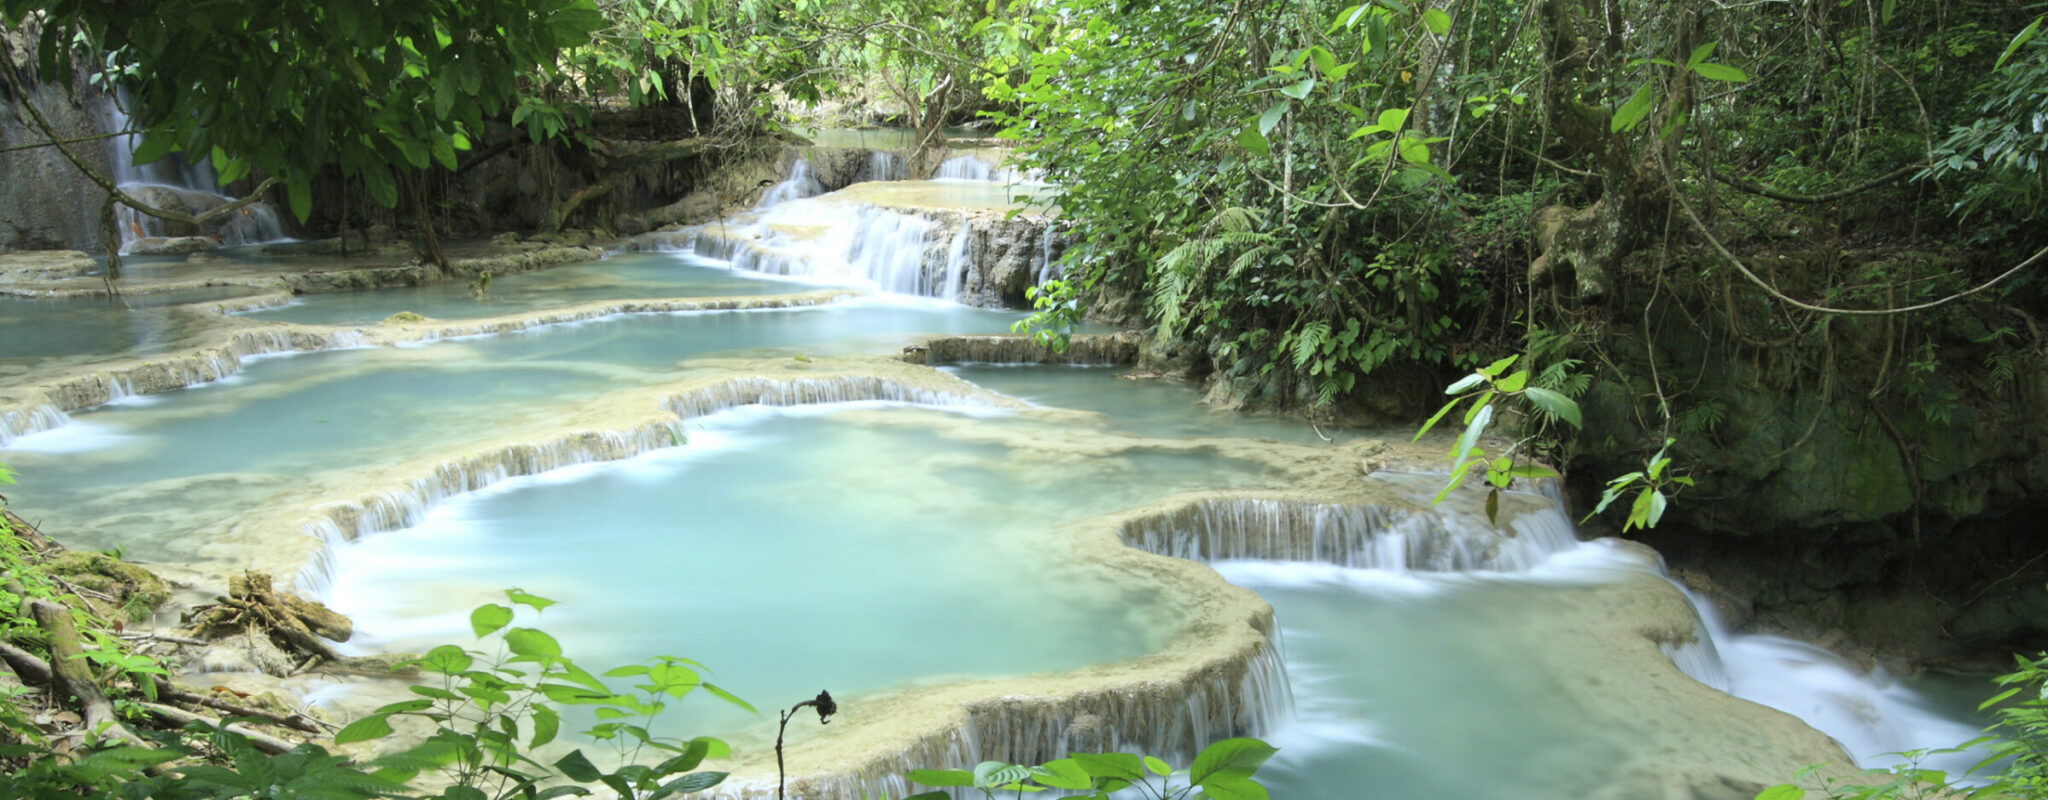 Smooth waterfalls near Luang Prabang in Laos, called Kwang Si falls